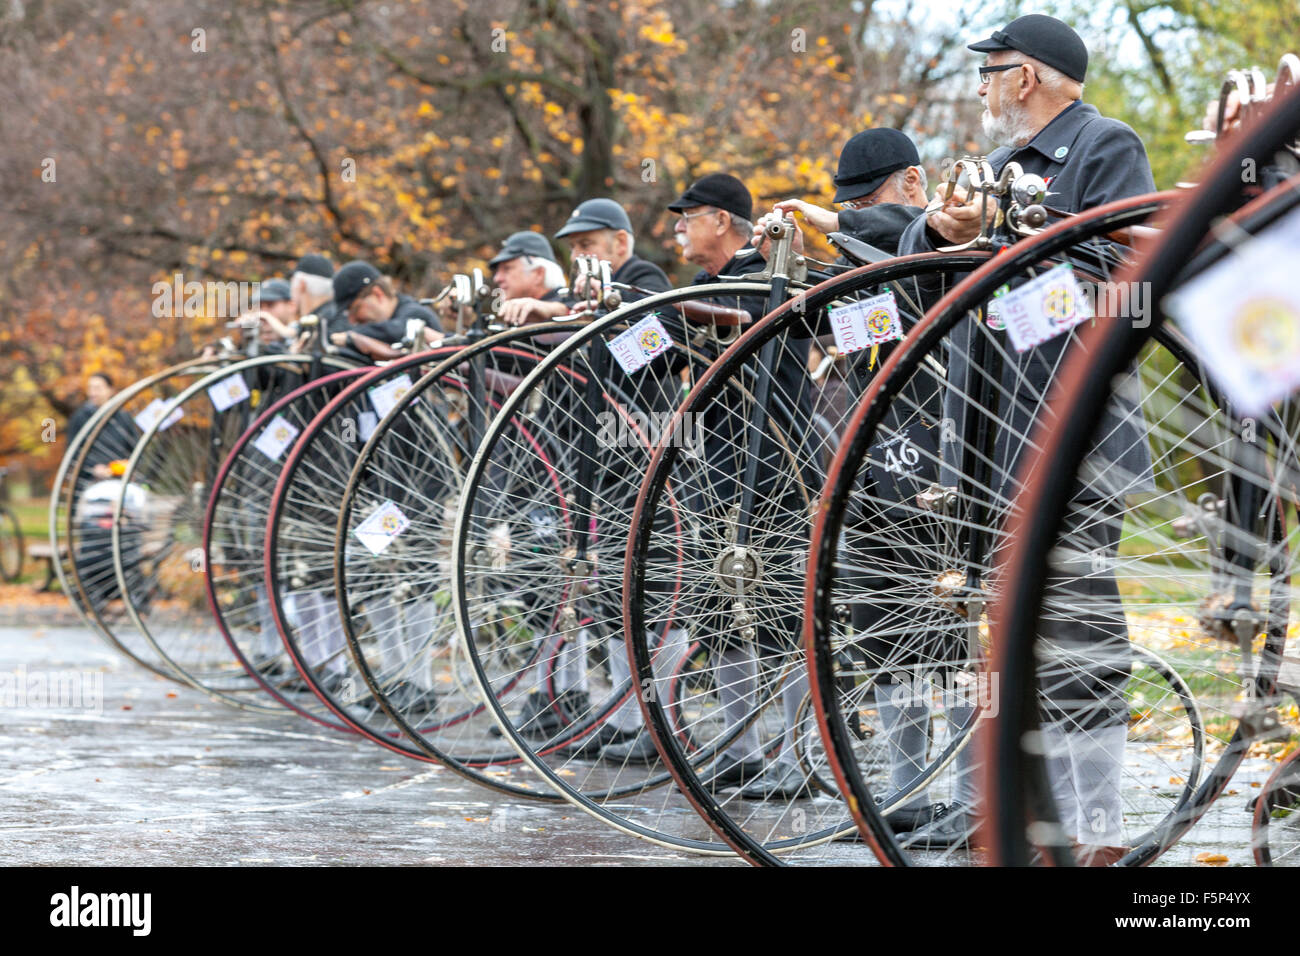 Les gens dans une course de vélo traditionnelle Penny Farthing. Les participants vêtus de costumes d'époque, Prague Letna Park automne République tchèque Banque D'Images